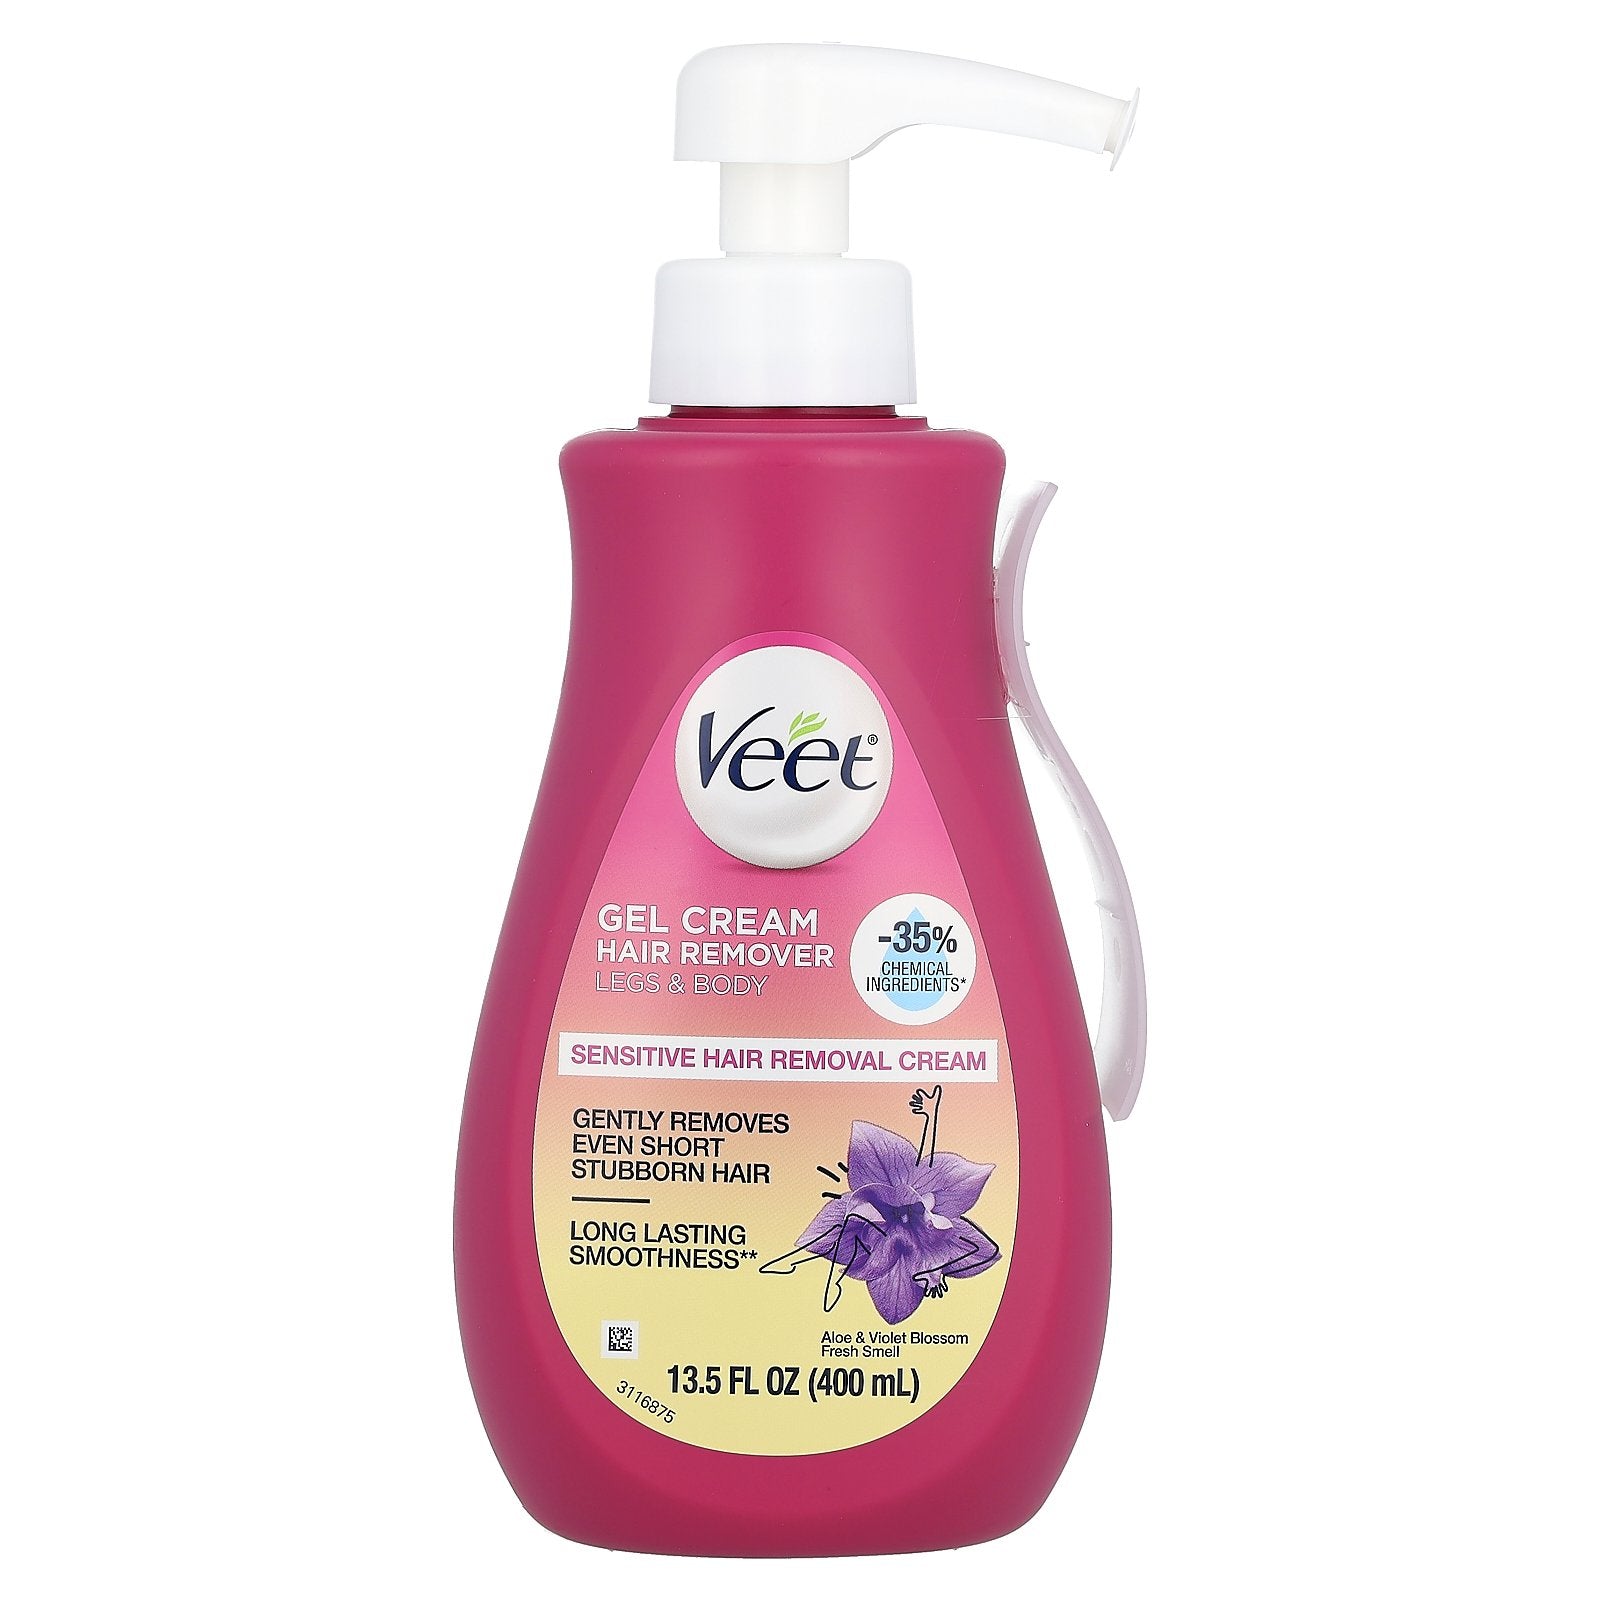 Veet, Gel Cream Hair Remover, Sensitive, Aloe & Violet Blossom Fresh Smell, 13.5 fl oz (400 ml)